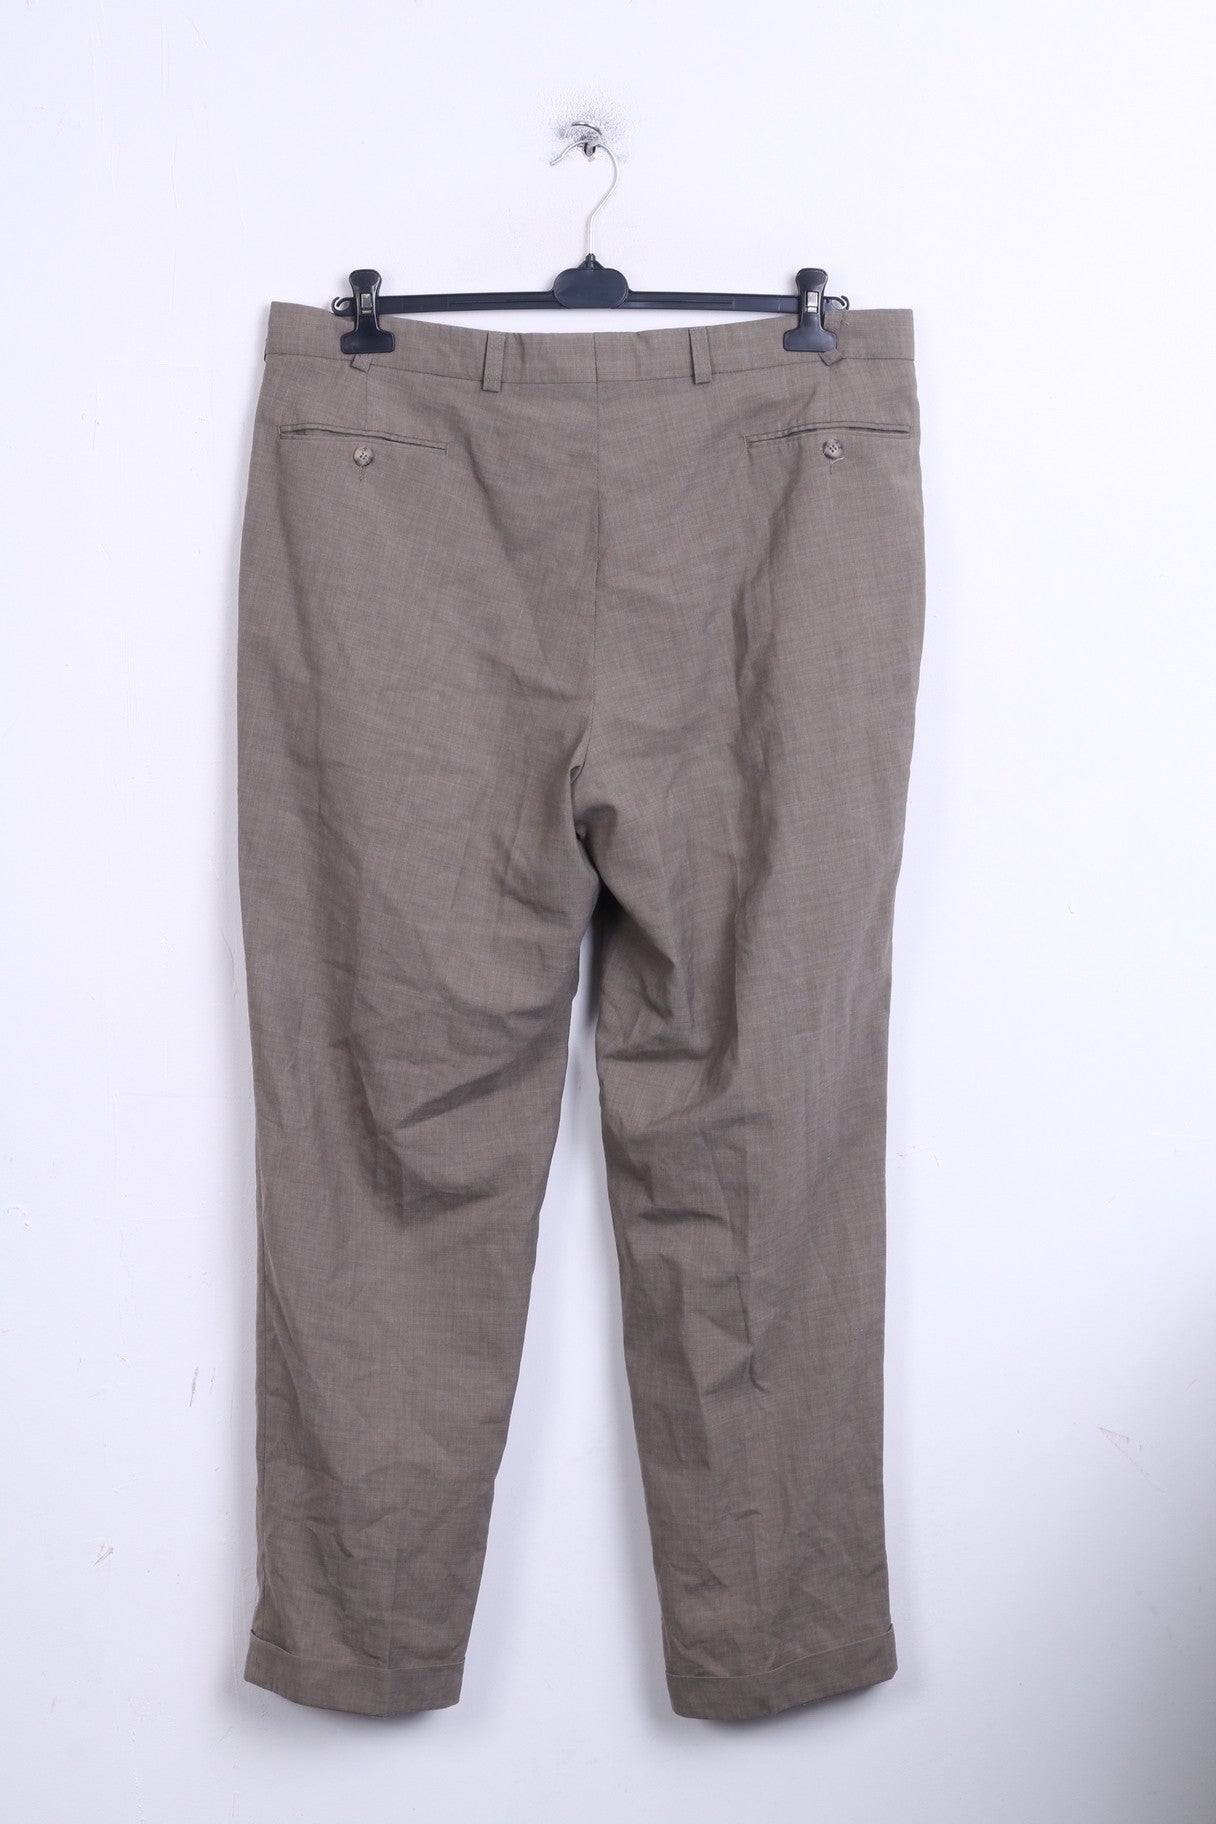 Sunde Mens XL Elegant Trousers Suit Pants Brown Wool - RetrospectClothes